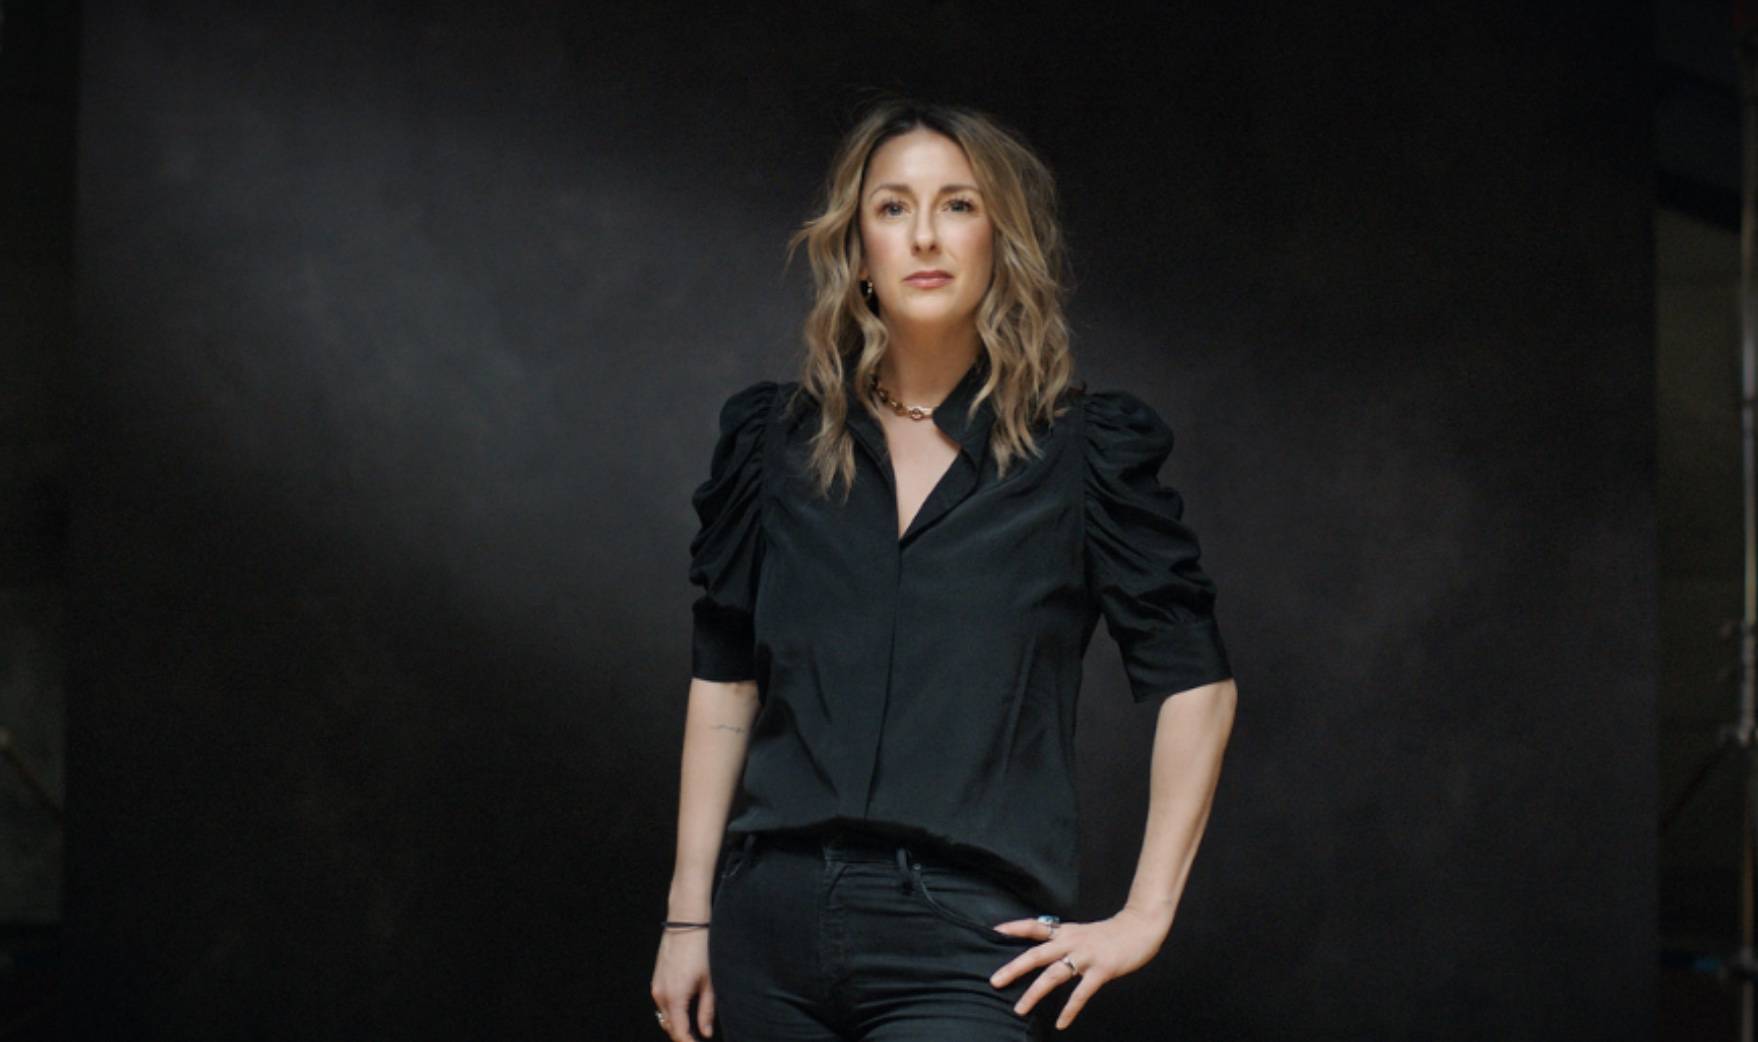 Headshot of Jen Costello wearing all black against a black backdrop